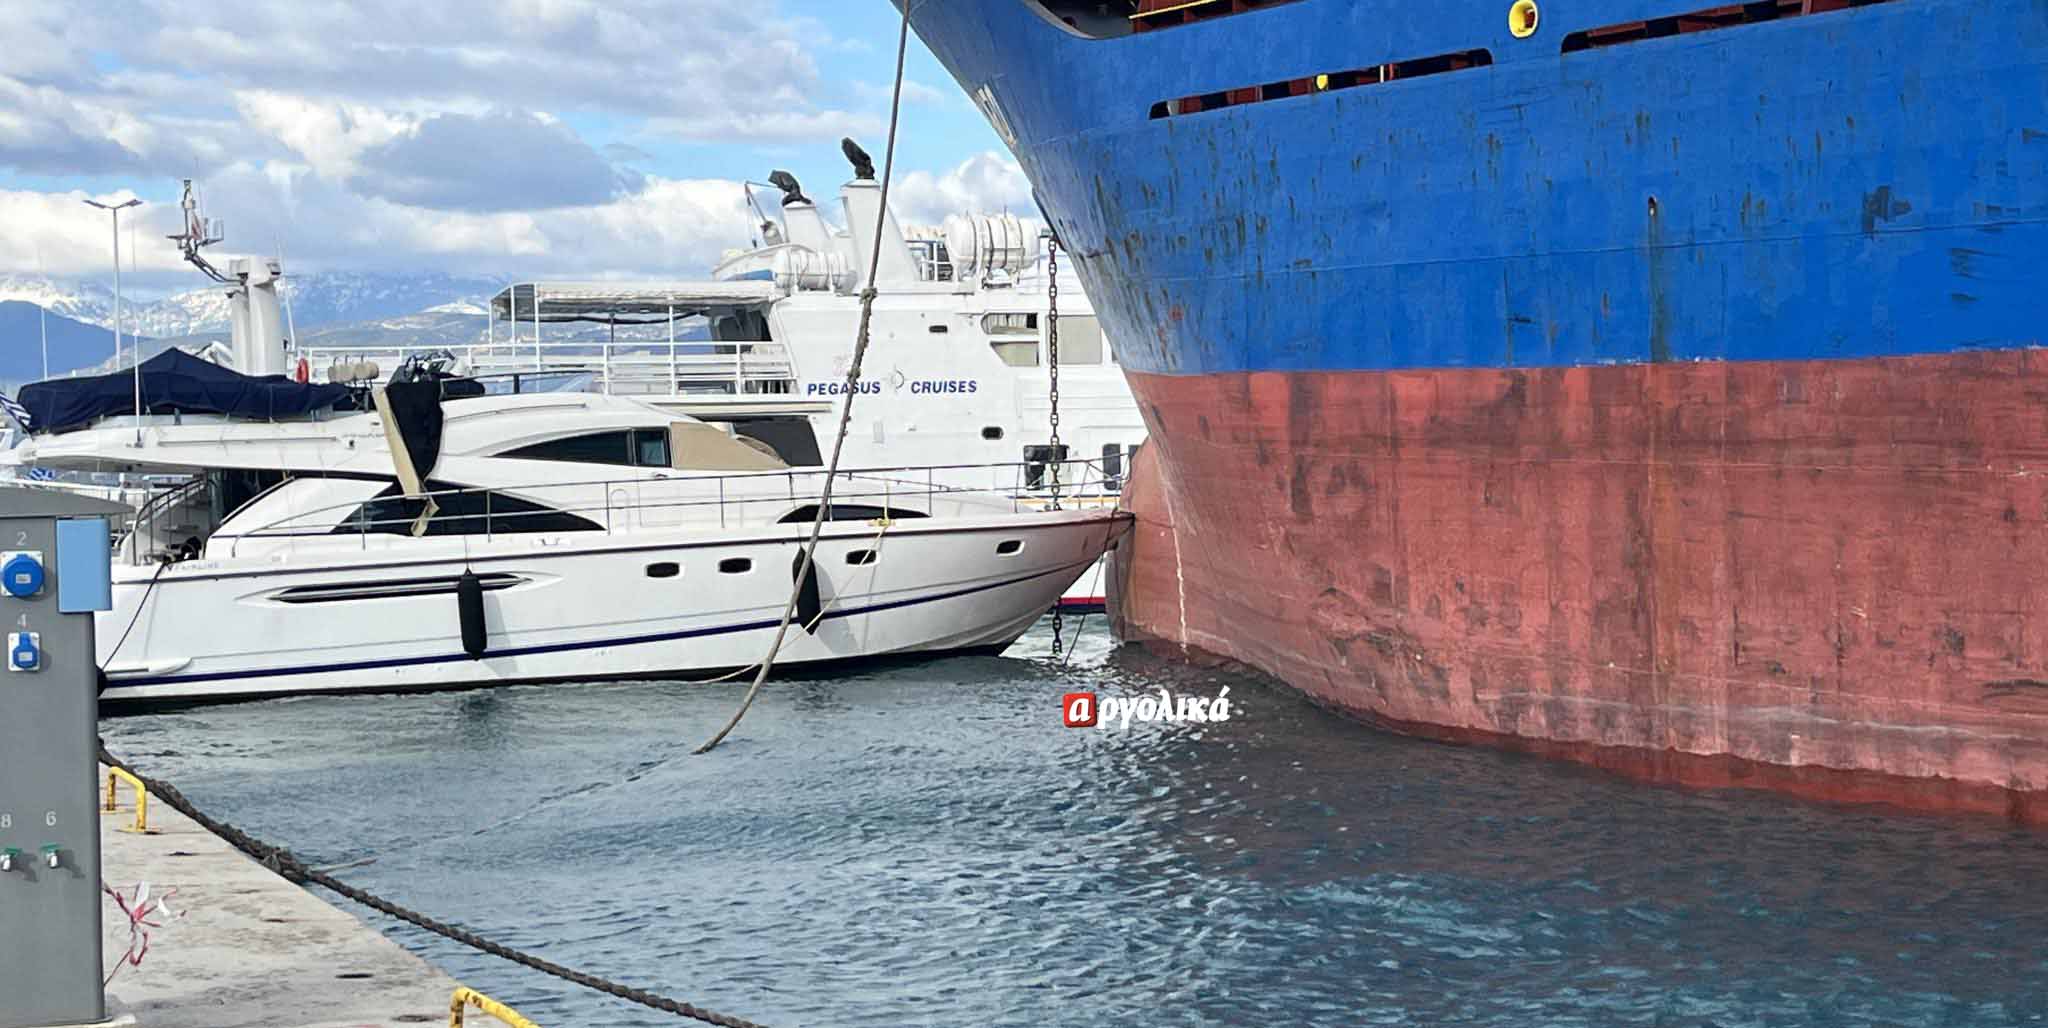 Λιμάνι Ναυπλίου: “Τρελό” φορτηγό